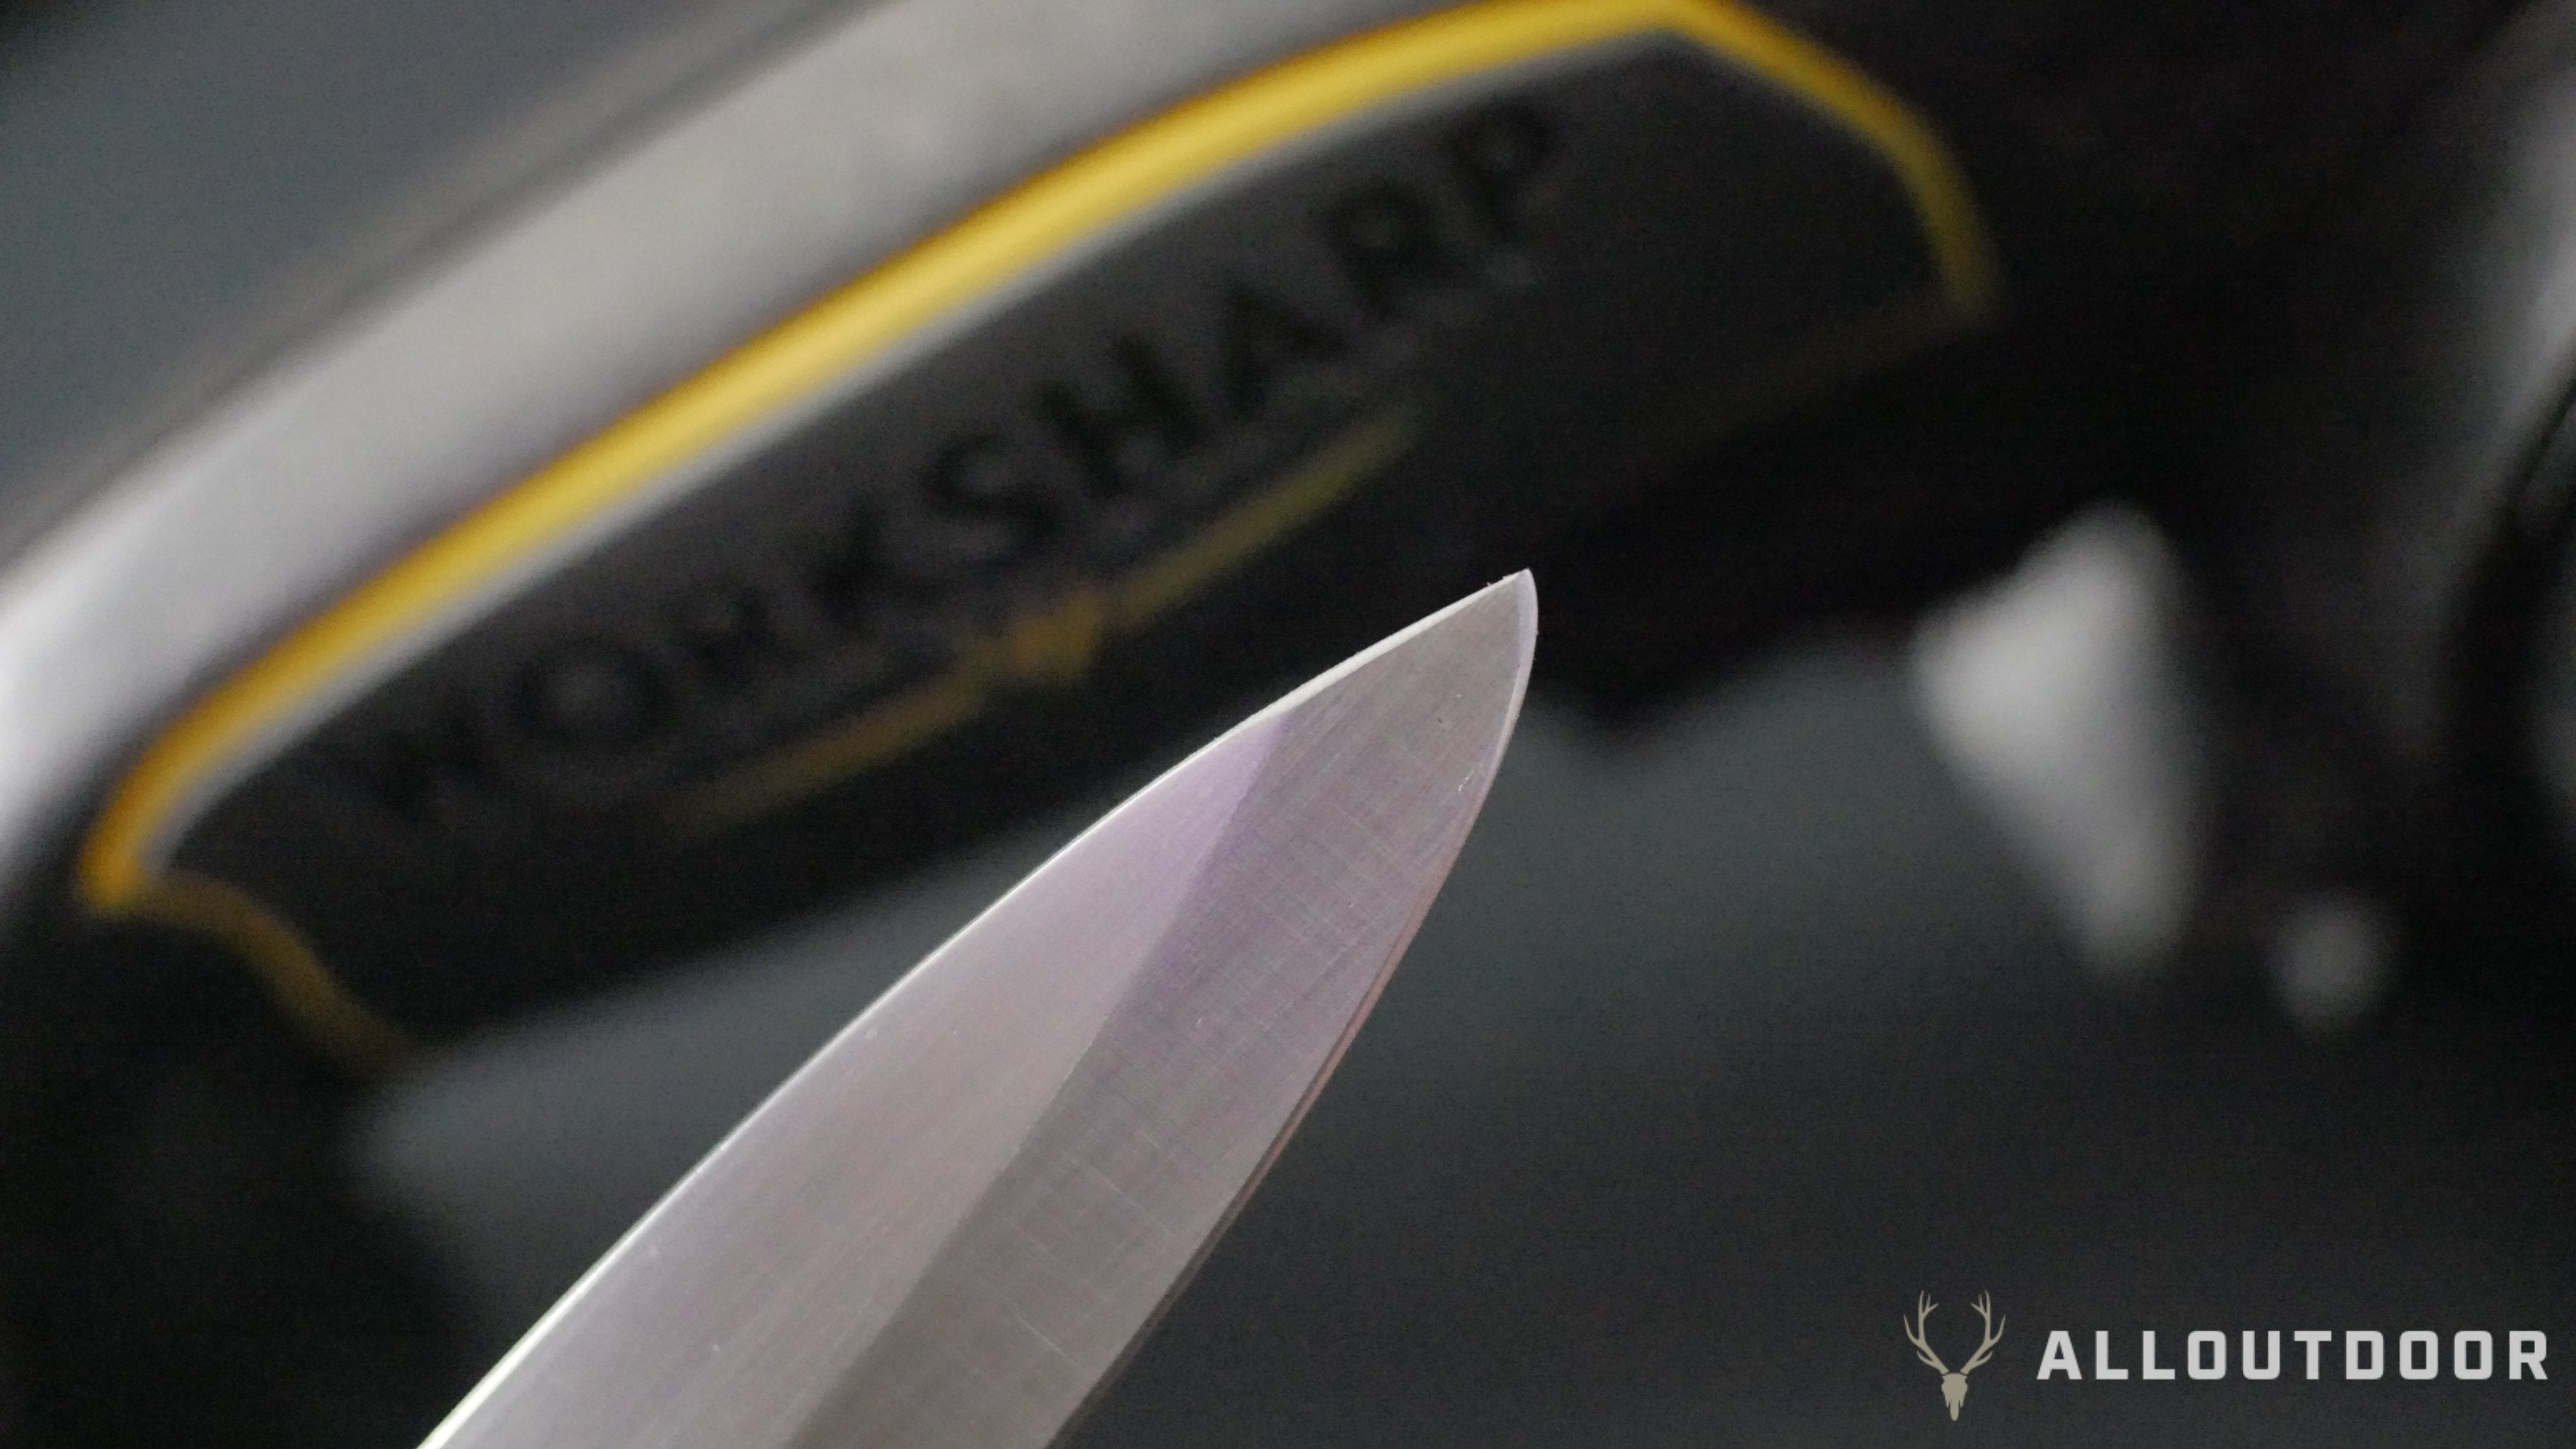 AOD Review: Work Sharp Ken Onion Sharpener - A Hunter's Essential